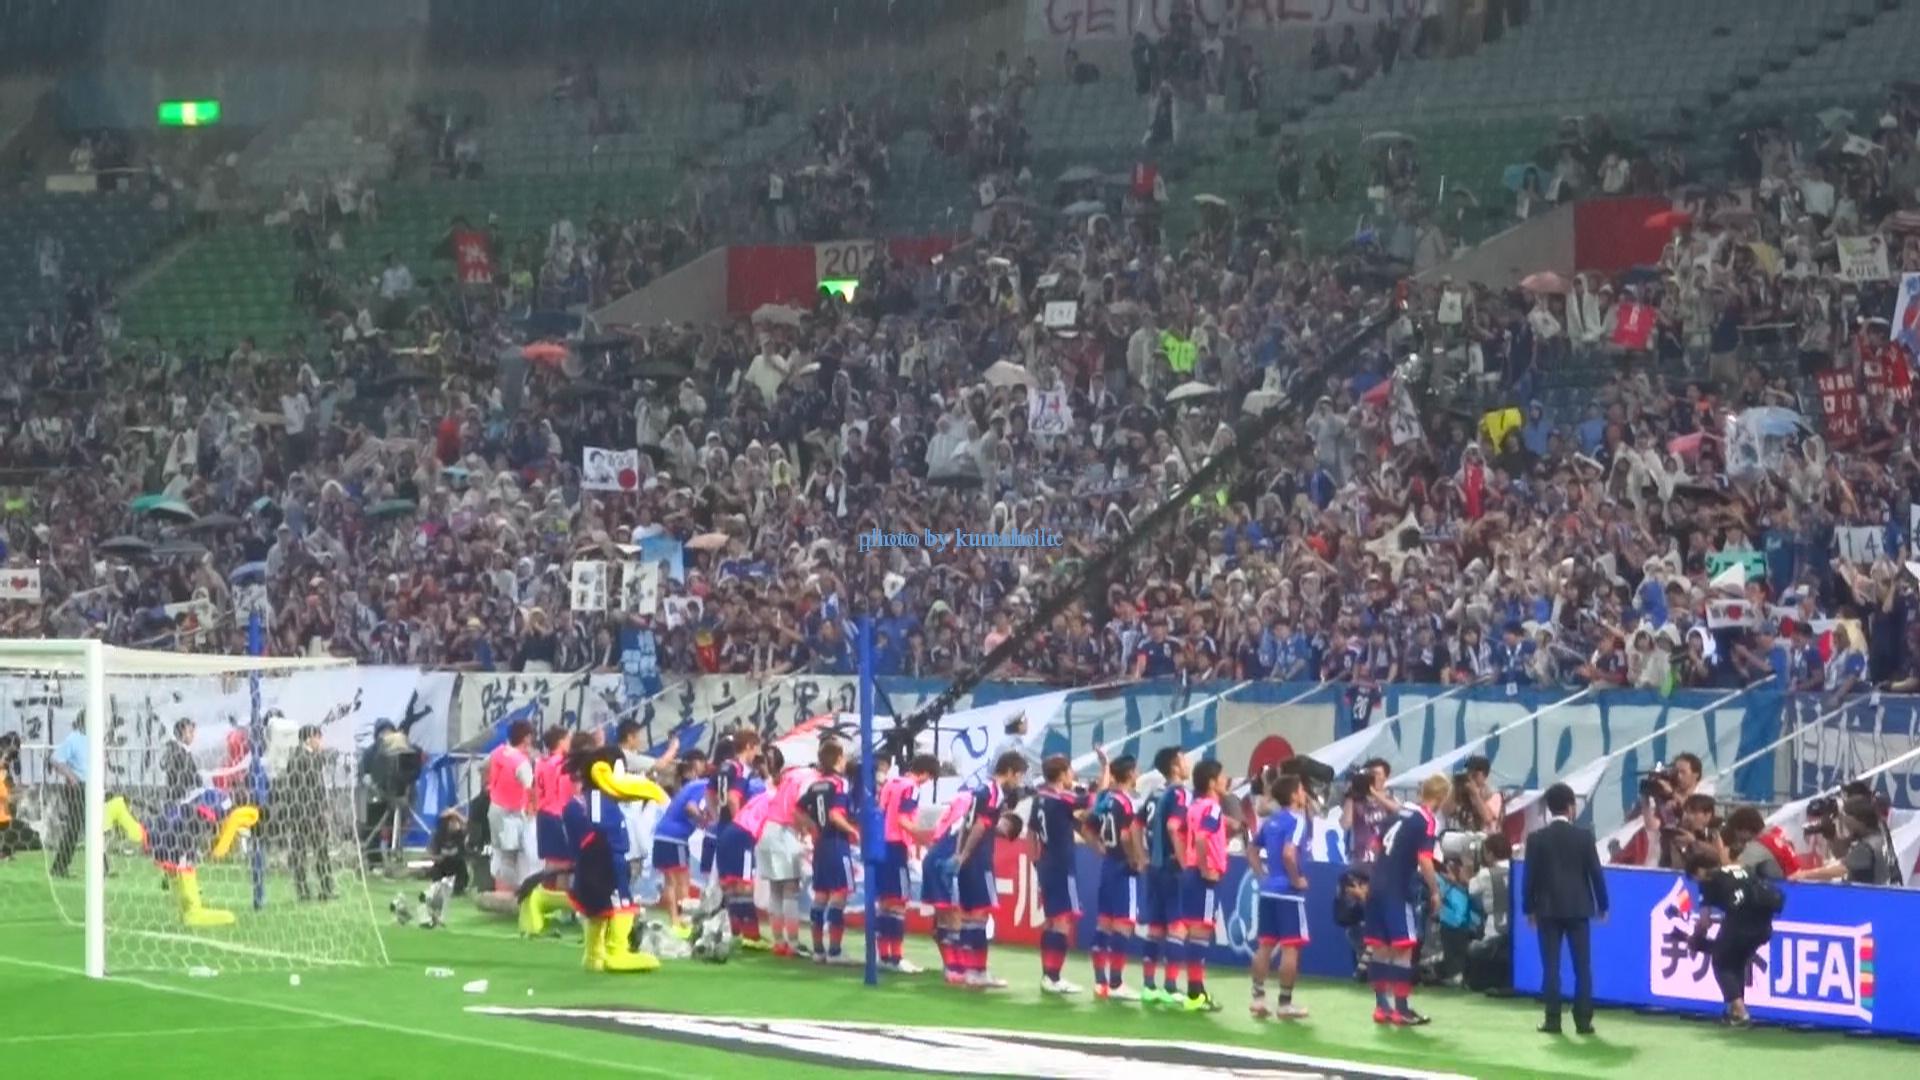 サッカー 日本代表対シンガポール代表戦を観に行ってきた 埼玉スタジアム 6 16 15 ミーハー大人女子生活